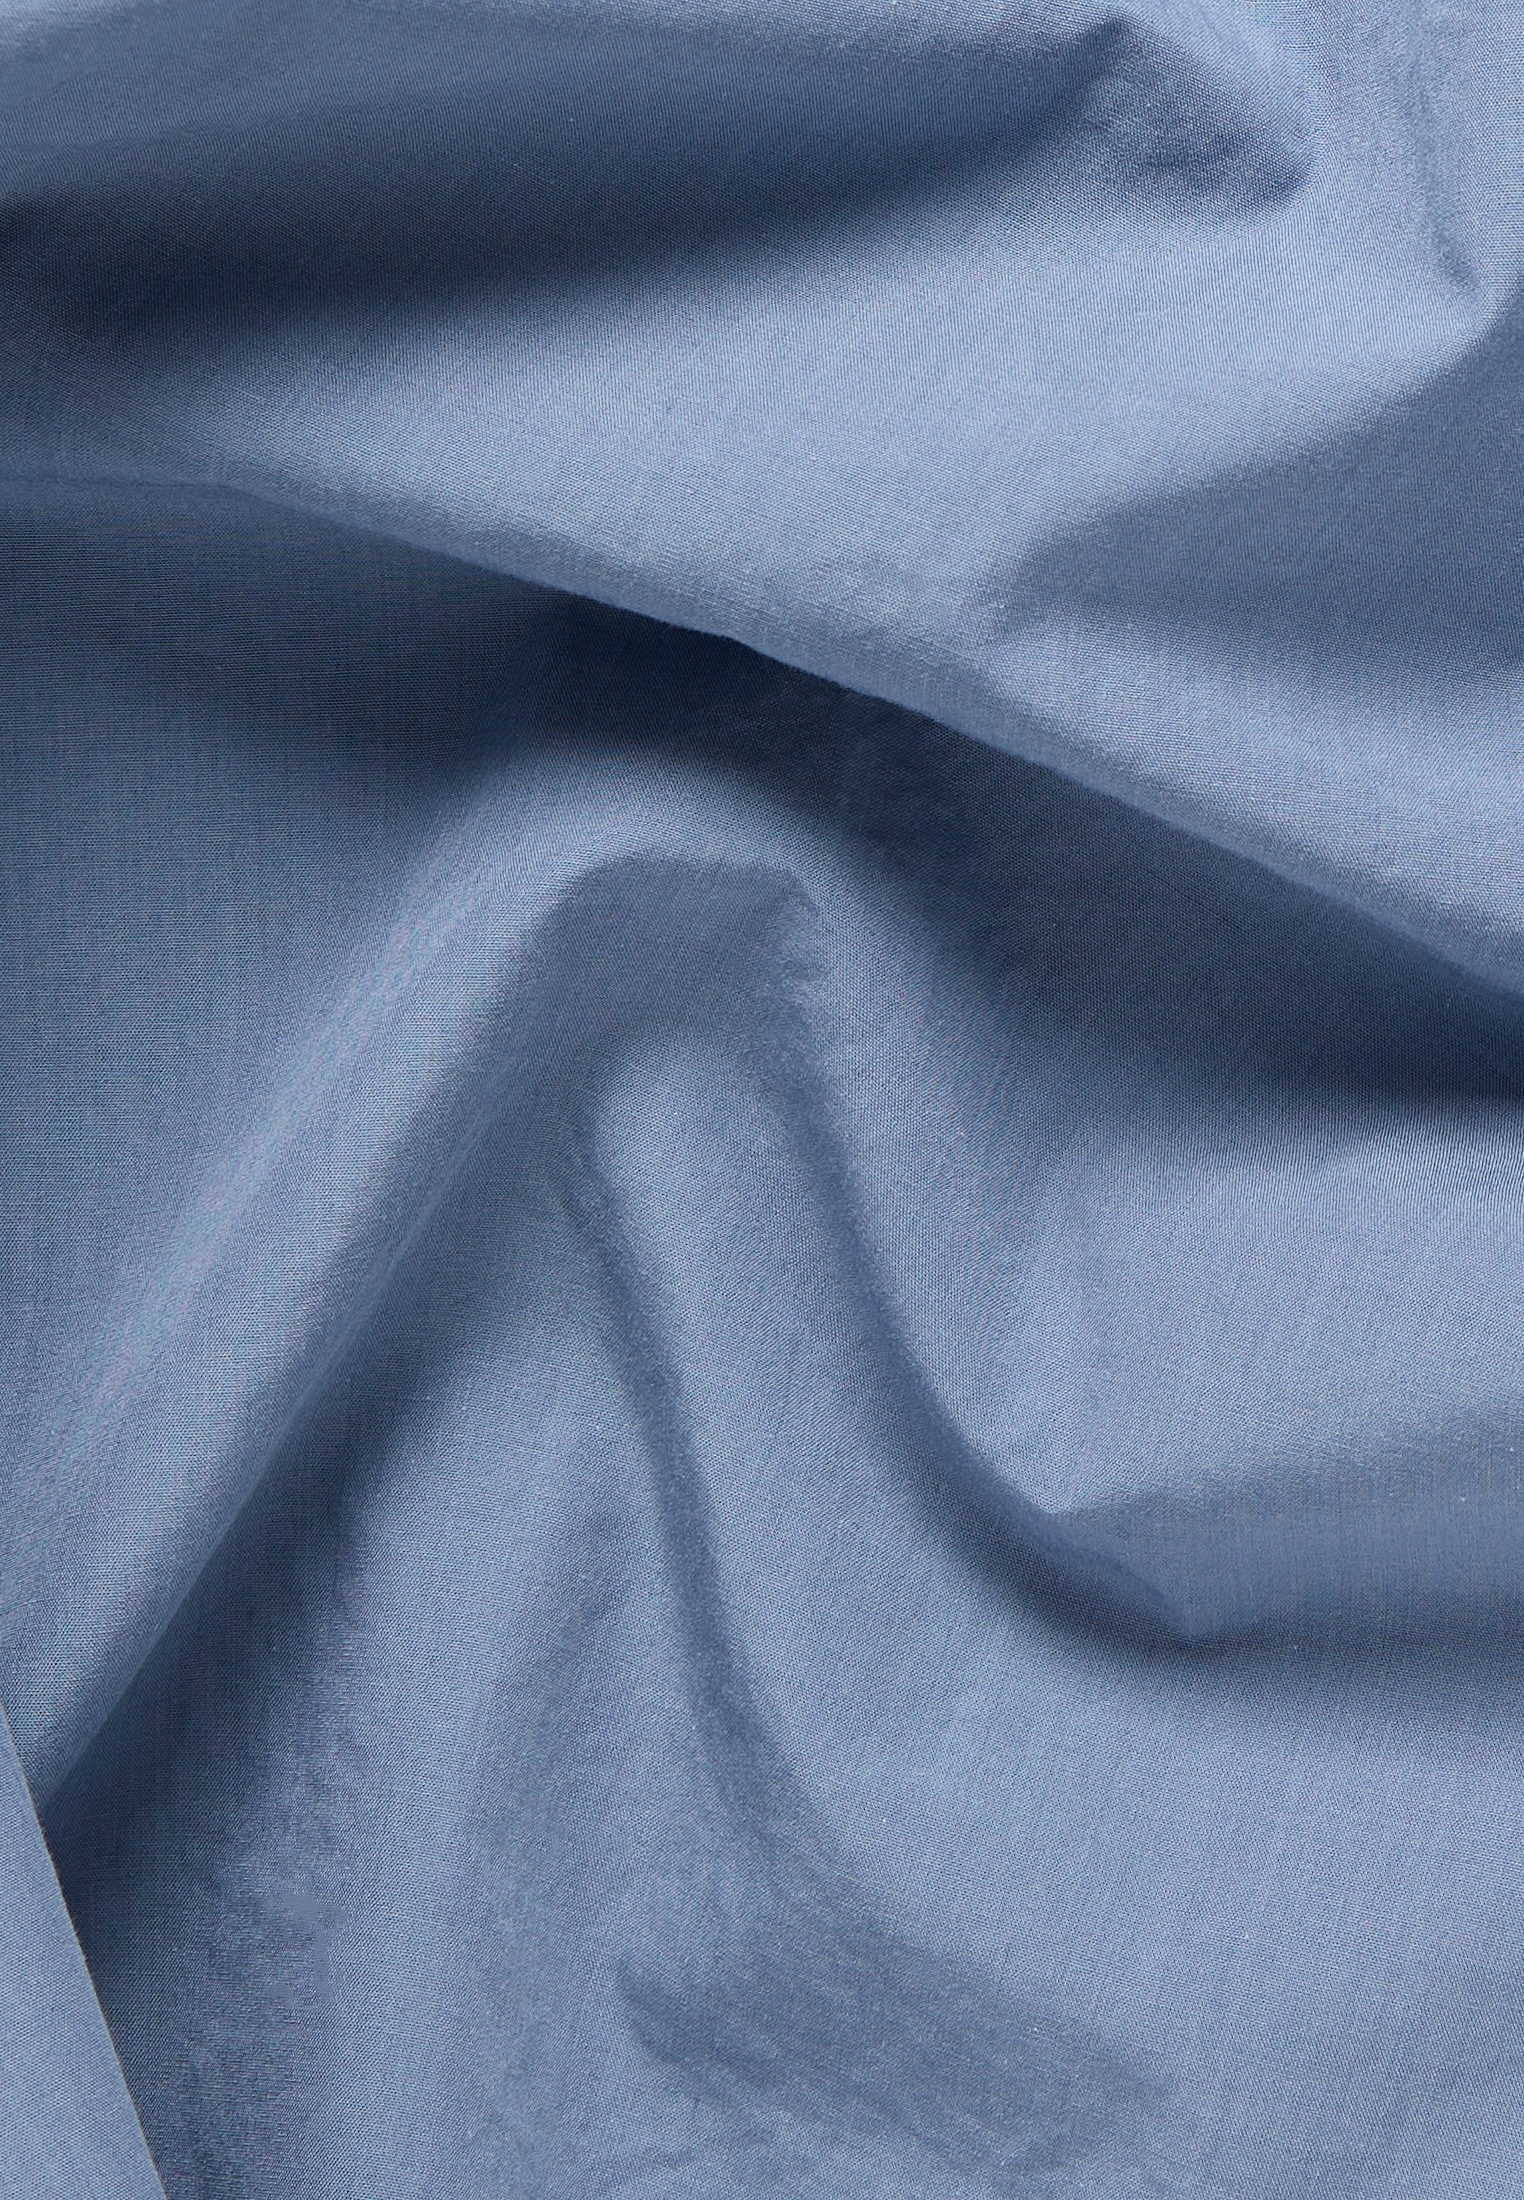 Blusenkleid in blaugrau unifarben | blaugrau | Kurzarm | 34 |  2DR00228-01-63-34-1/2